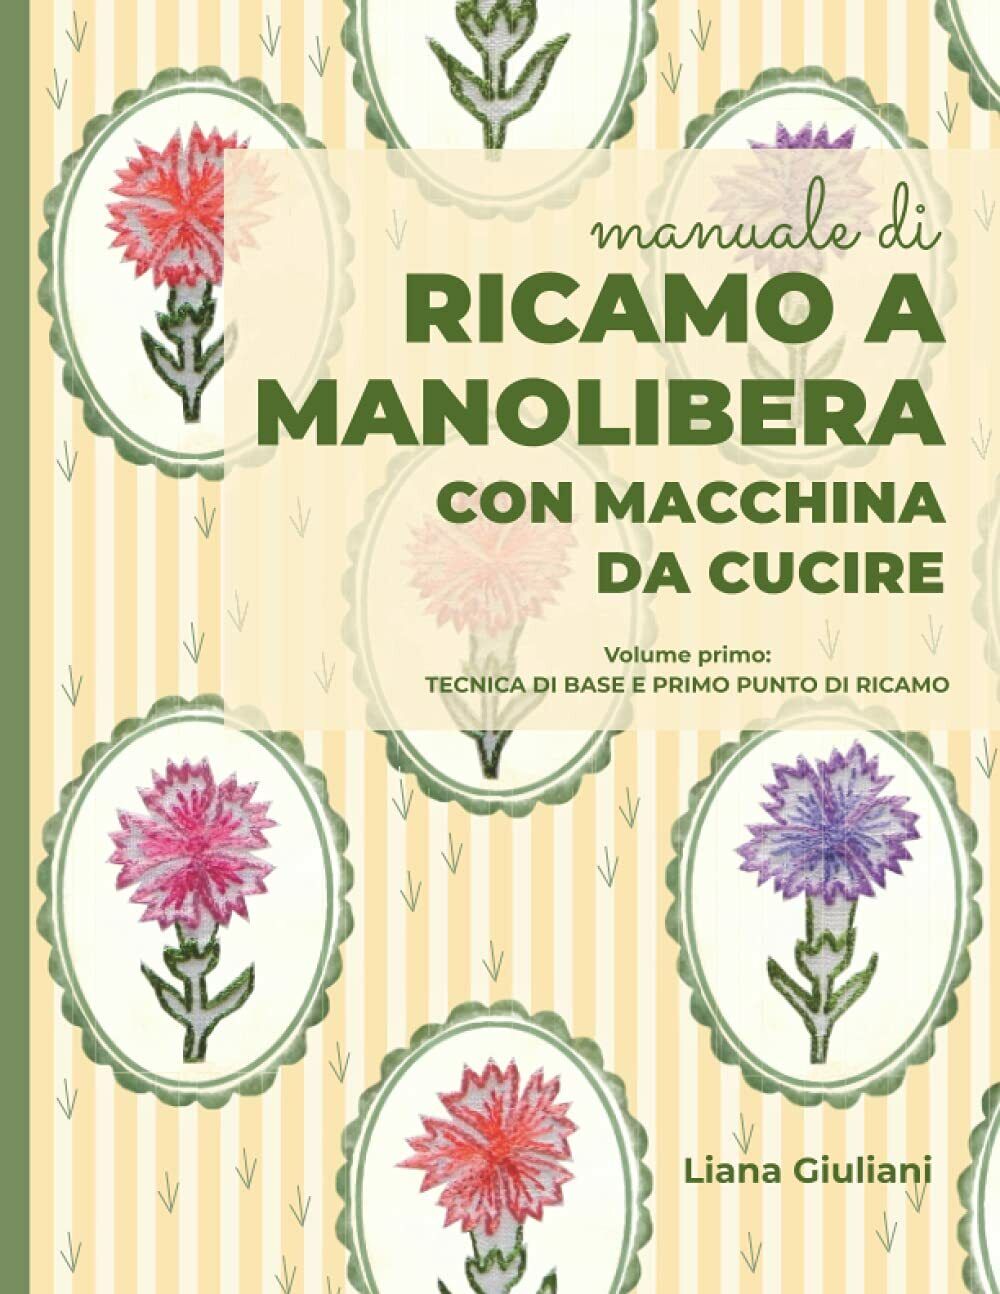 RICAMO A MANOLIBERA CON MACCHINA DA CUCIRE: Volume primo:Tecnica di base e primo